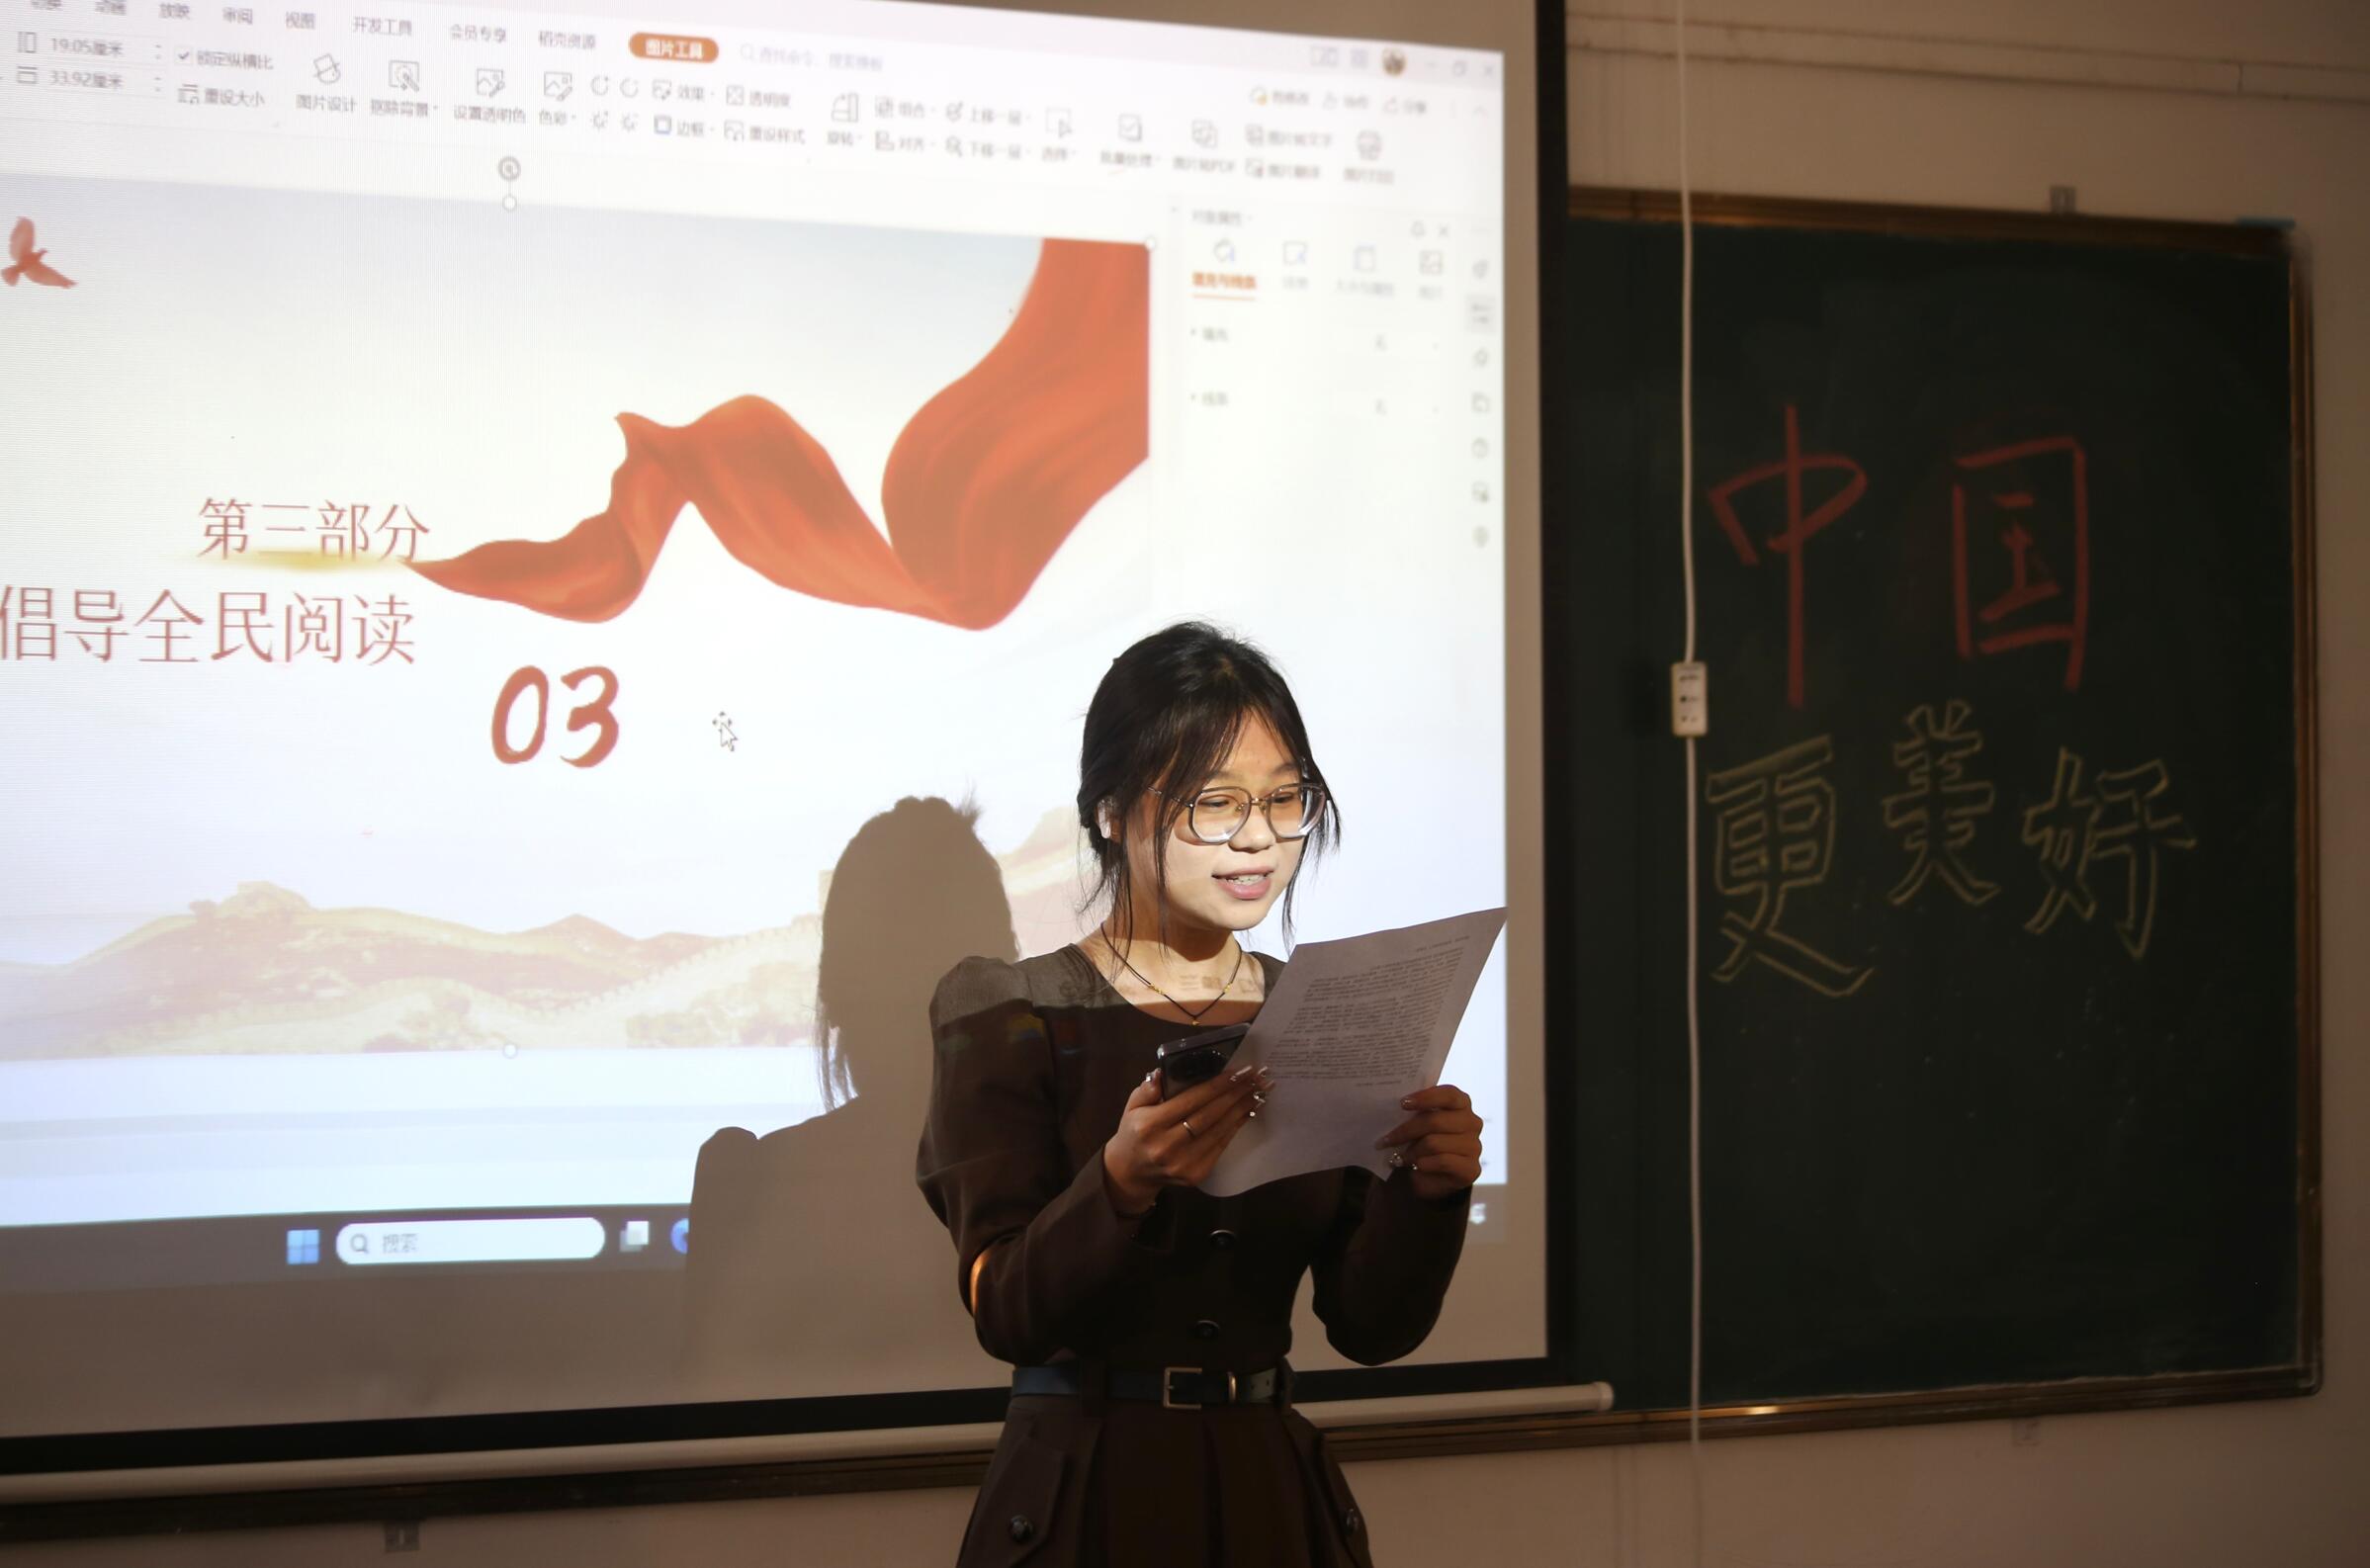 智慧空间设计学院举行“阅读让中国更美好”主题演讲比赛 第 2 张